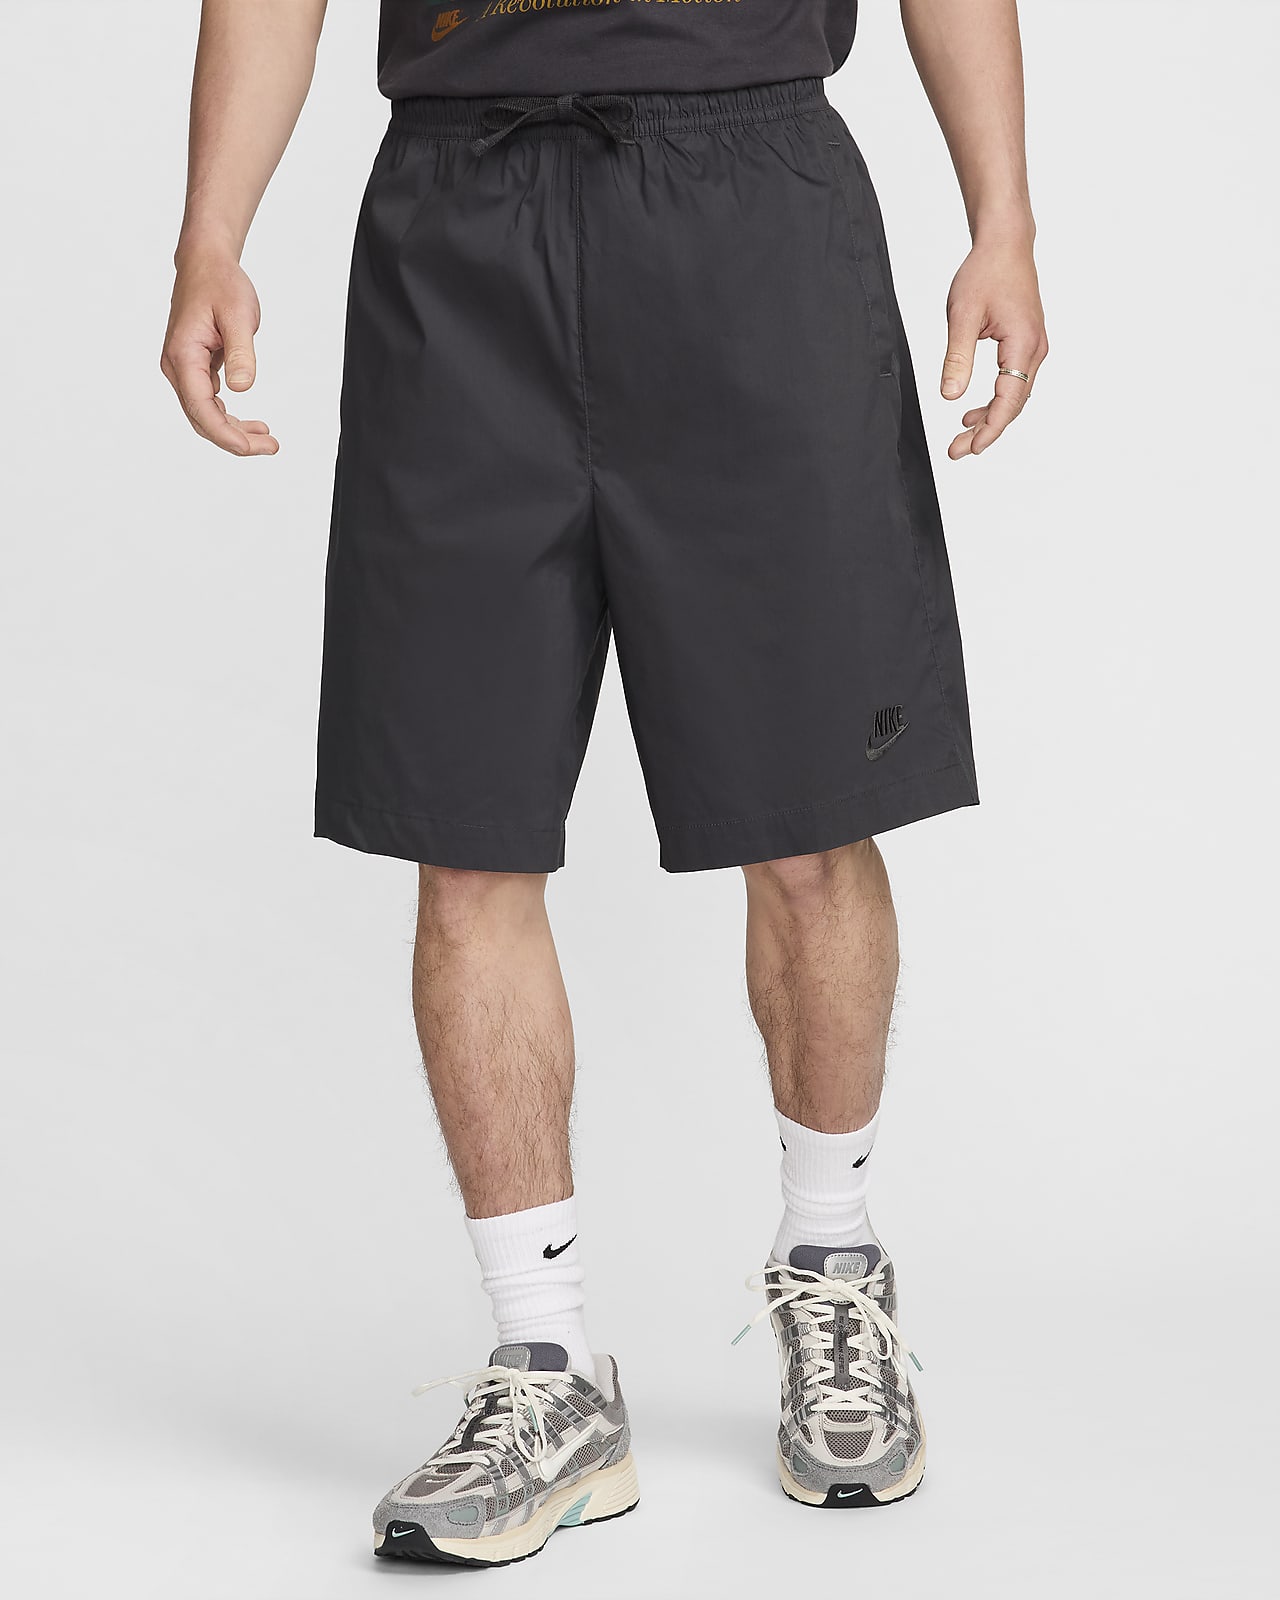 Nike Sportswear 男款梭織寬版短褲